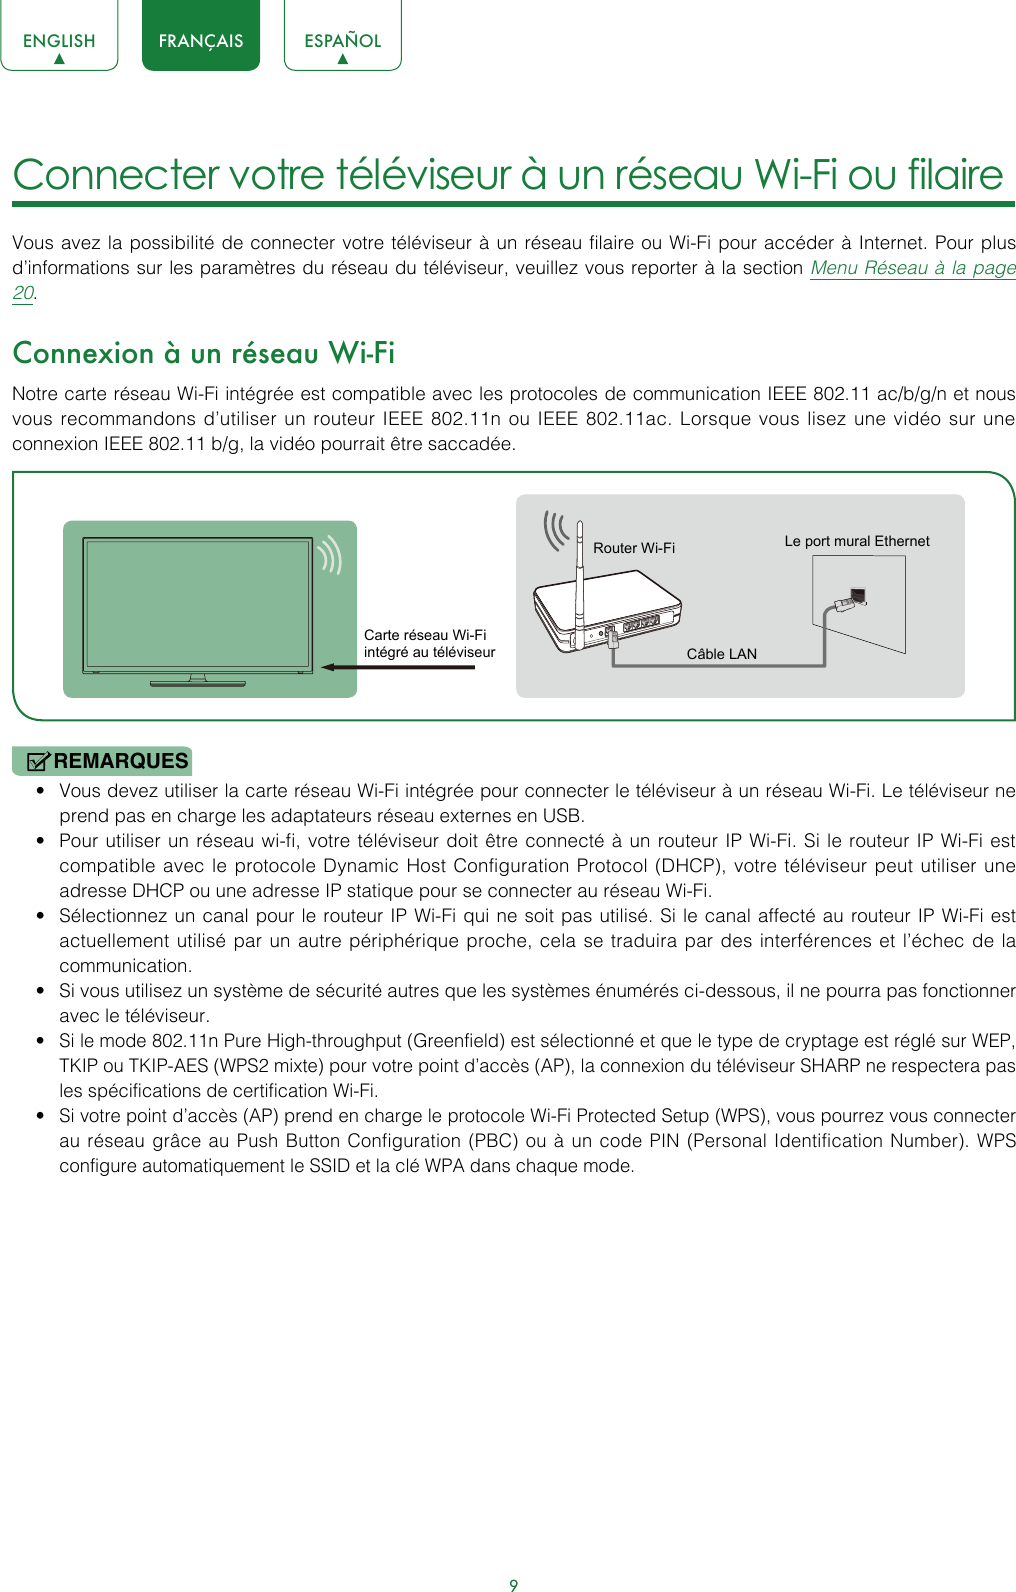 9ENGLISH FRANÇAIS ESPAÑOL9Connecter votre téléviseur à un réseau Wi-Fi ou filaire Vous avez la possibilité de connecter votre téléviseur à un réseau filaire ou Wi-Fi pour accéder à Internet. Pour plus d’informations sur les paramètres du réseau du téléviseur, veuillez vous reporter à la section Menu Réseau à la page 20.Connexion à un réseau Wi-FiNotre carte réseau Wi-Fi intégrée est compatible avec les protocoles de communication IEEE 802.11 ac/b/g/n et nous vous recommandons d’utiliser un routeur IEEE 802.11n ou IEEE 802.11ac. Lorsque vous lisez une vidéo sur une connexion IEEE 802.11 b/g, la vidéo pourrait être saccadée.REMARQUES• Vous devez utiliser la carte réseau Wi-Fi intégrée pour connecter le téléviseur à un réseau Wi-Fi. Le téléviseur ne prend pas en charge les adaptateurs réseau externes en USB.• Pour utiliser un réseau wi-fi, votre téléviseur doit être connecté à un routeur IP Wi-Fi. Si le routeur IP Wi-Fi est compatible avec le protocole Dynamic Host Configuration Protocol (DHCP), votre téléviseur peut utiliser une adresse DHCP ou une adresse IP statique pour se connecter au réseau Wi-Fi.• Sélectionnez un canal pour le routeur IP Wi-Fi qui ne soit pas utilisé. Si le canal affecté au routeur IP Wi-Fi est actuellement utilisé par un autre périphérique proche, cela se traduira par des interférences et l’échec de la communication.• Si vous utilisez un système de sécurité autres que les systèmes énumérés ci-dessous, il ne pourra pas fonctionner avec le téléviseur.• Si le mode 802.11n Pure High-throughput (Greenfield) est sélectionné et que le type de cryptage est réglé sur WEP, TKIP ou TKIP-AES (WPS2 mixte) pour votre point d’accès (AP), la connexion du téléviseur SHARP ne respectera pas les spécifications de certification Wi-Fi.• Si votre point d’accès (AP) prend en charge le protocole Wi-Fi Protected Setup (WPS), vous pourrez vous connecter au réseau grâce au Push Button Configuration (PBC) ou à un code PIN (Personal Identification Number). WPS configure automatiquement le SSID et la clé WPA dans chaque mode.Carte réseau Wi-Fi intégré au téléviseurRouter Wi-Fi Le port mural EthernetCâble LAN